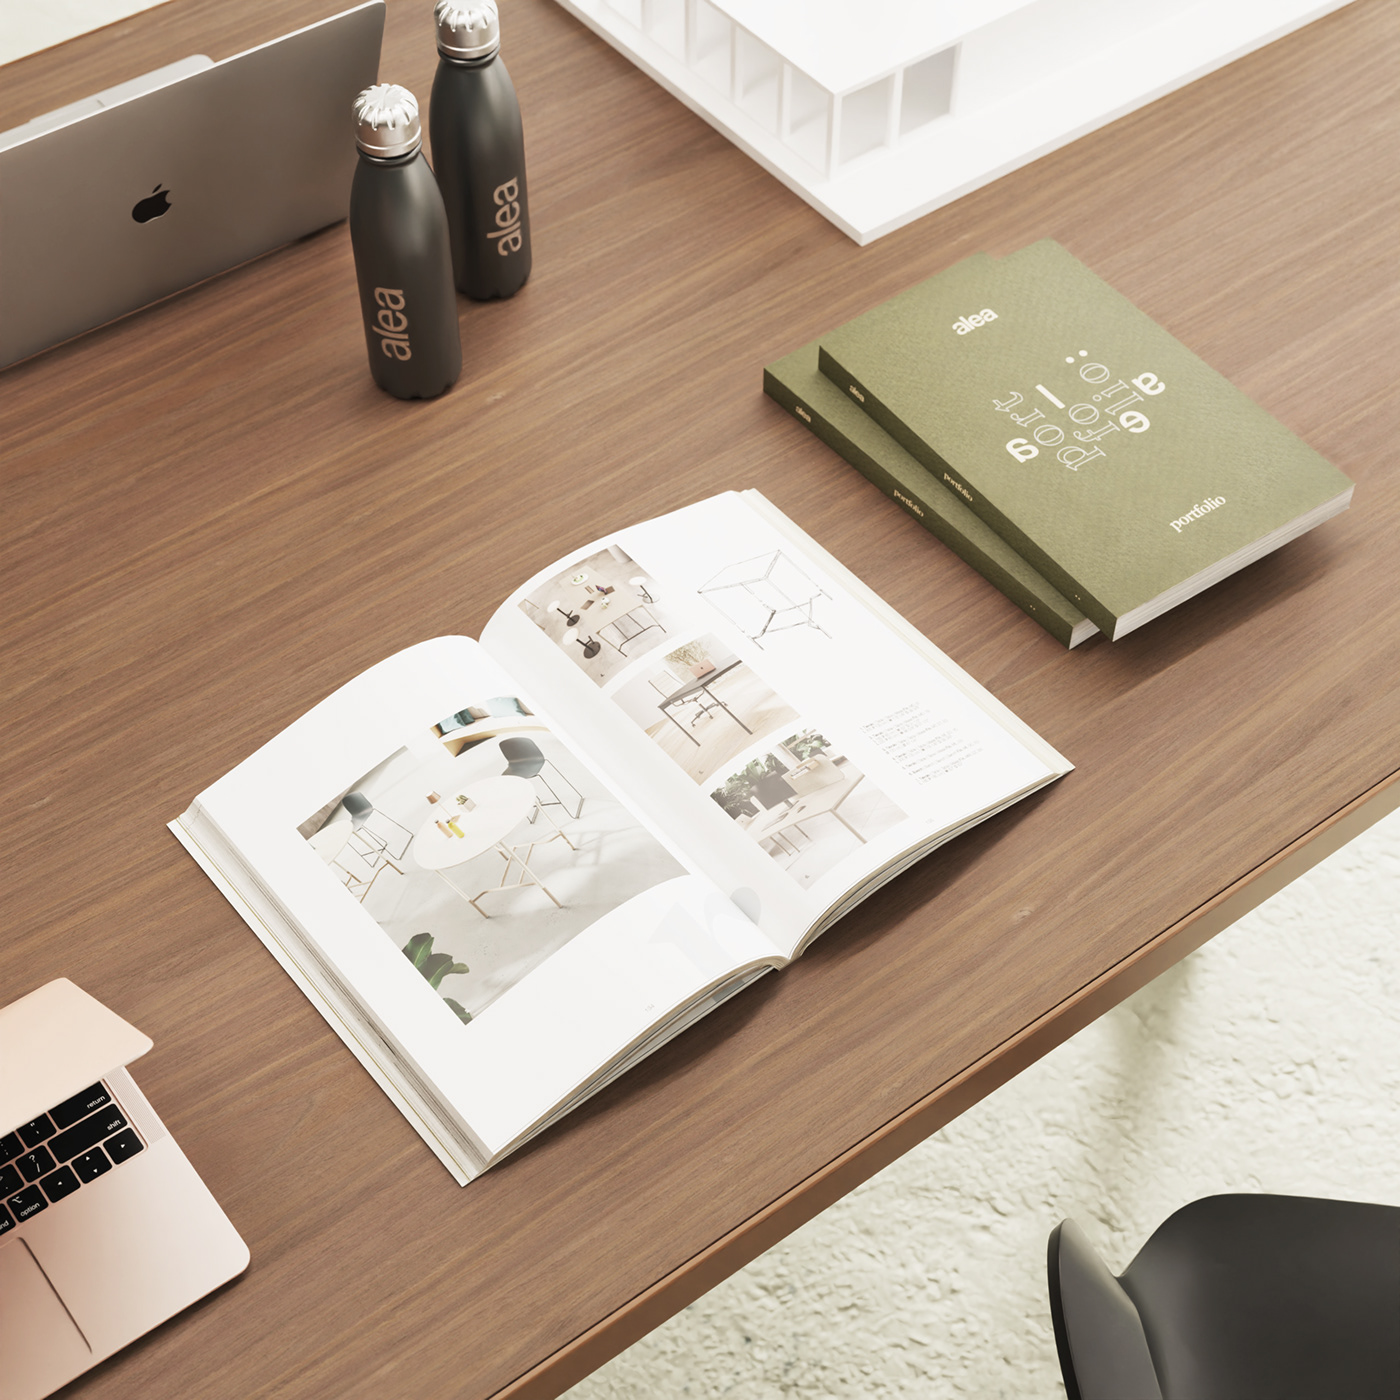 3D desk industrial interior design  keyshot Office planters portfolio product design  Render